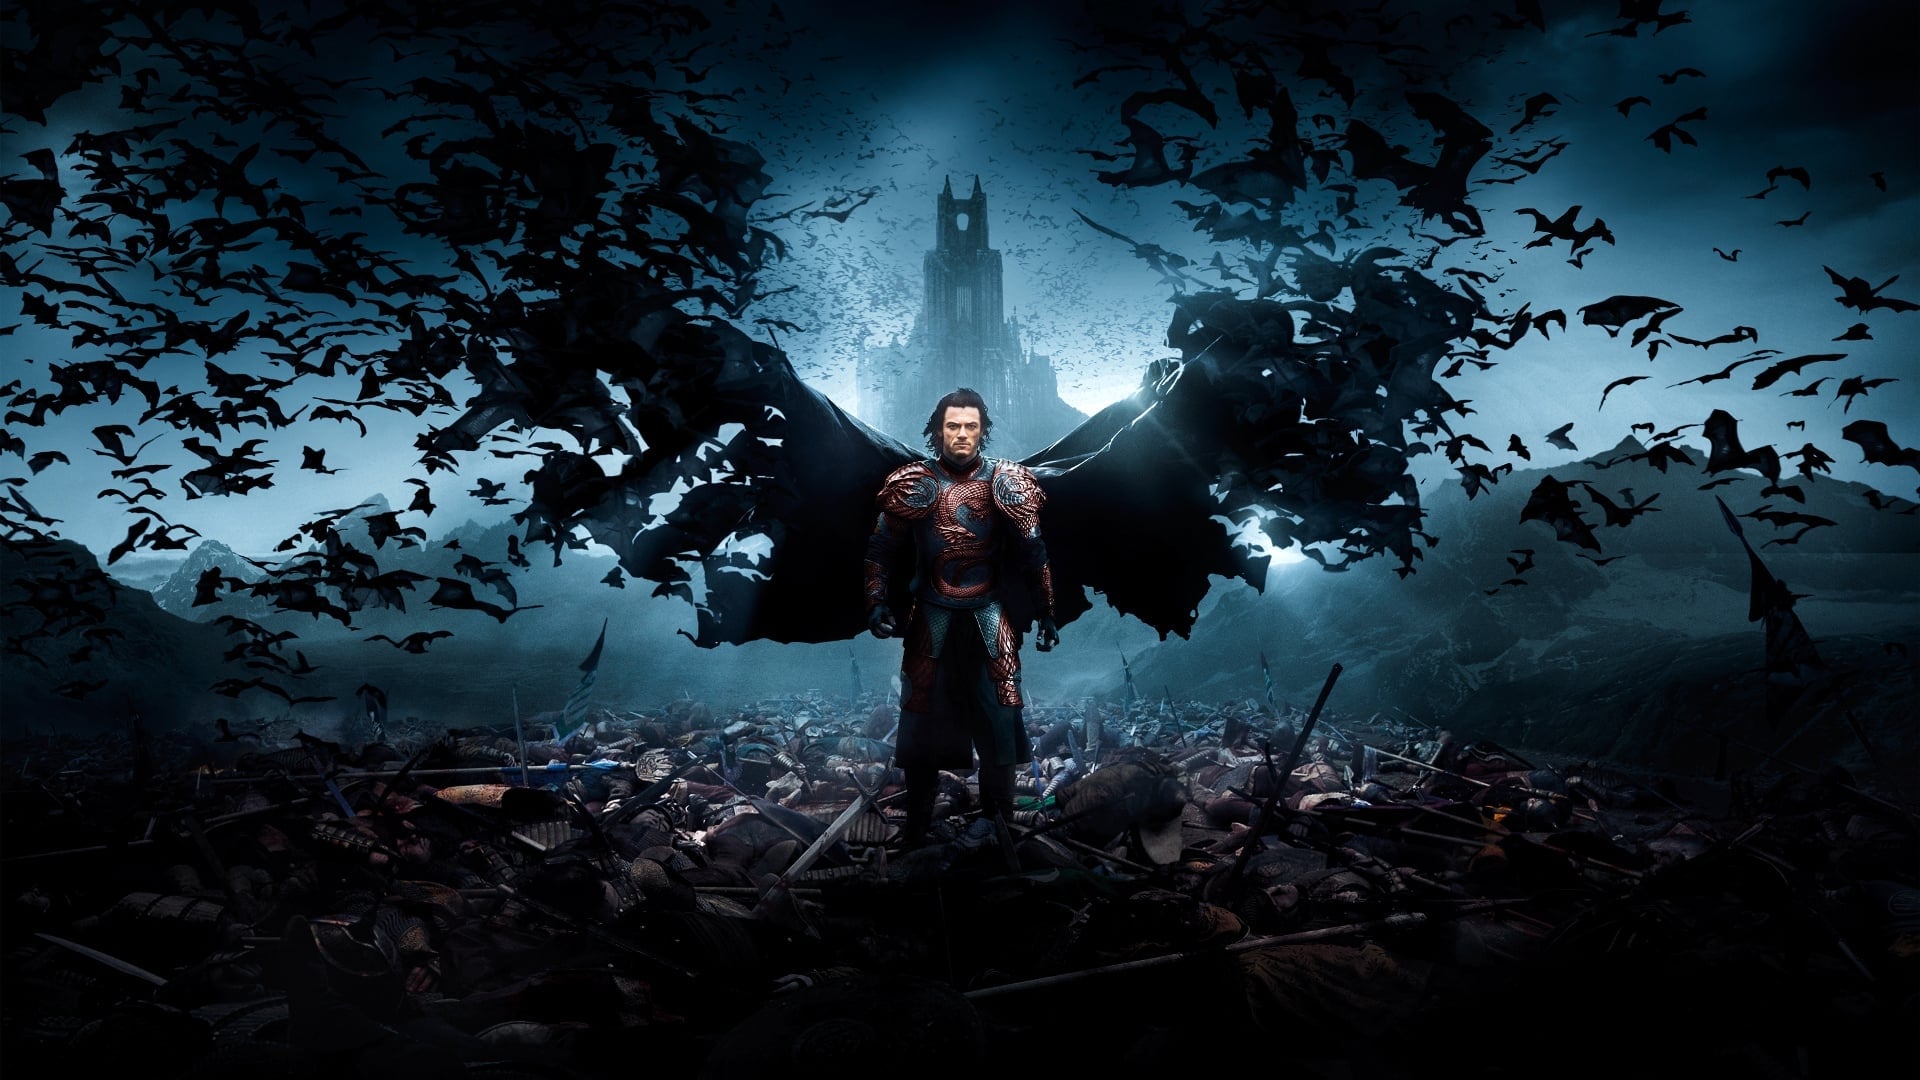 Poster Phim Ác Quỷ Dracula: Huyền Thoại Chưa Kể (Dracula Untold)